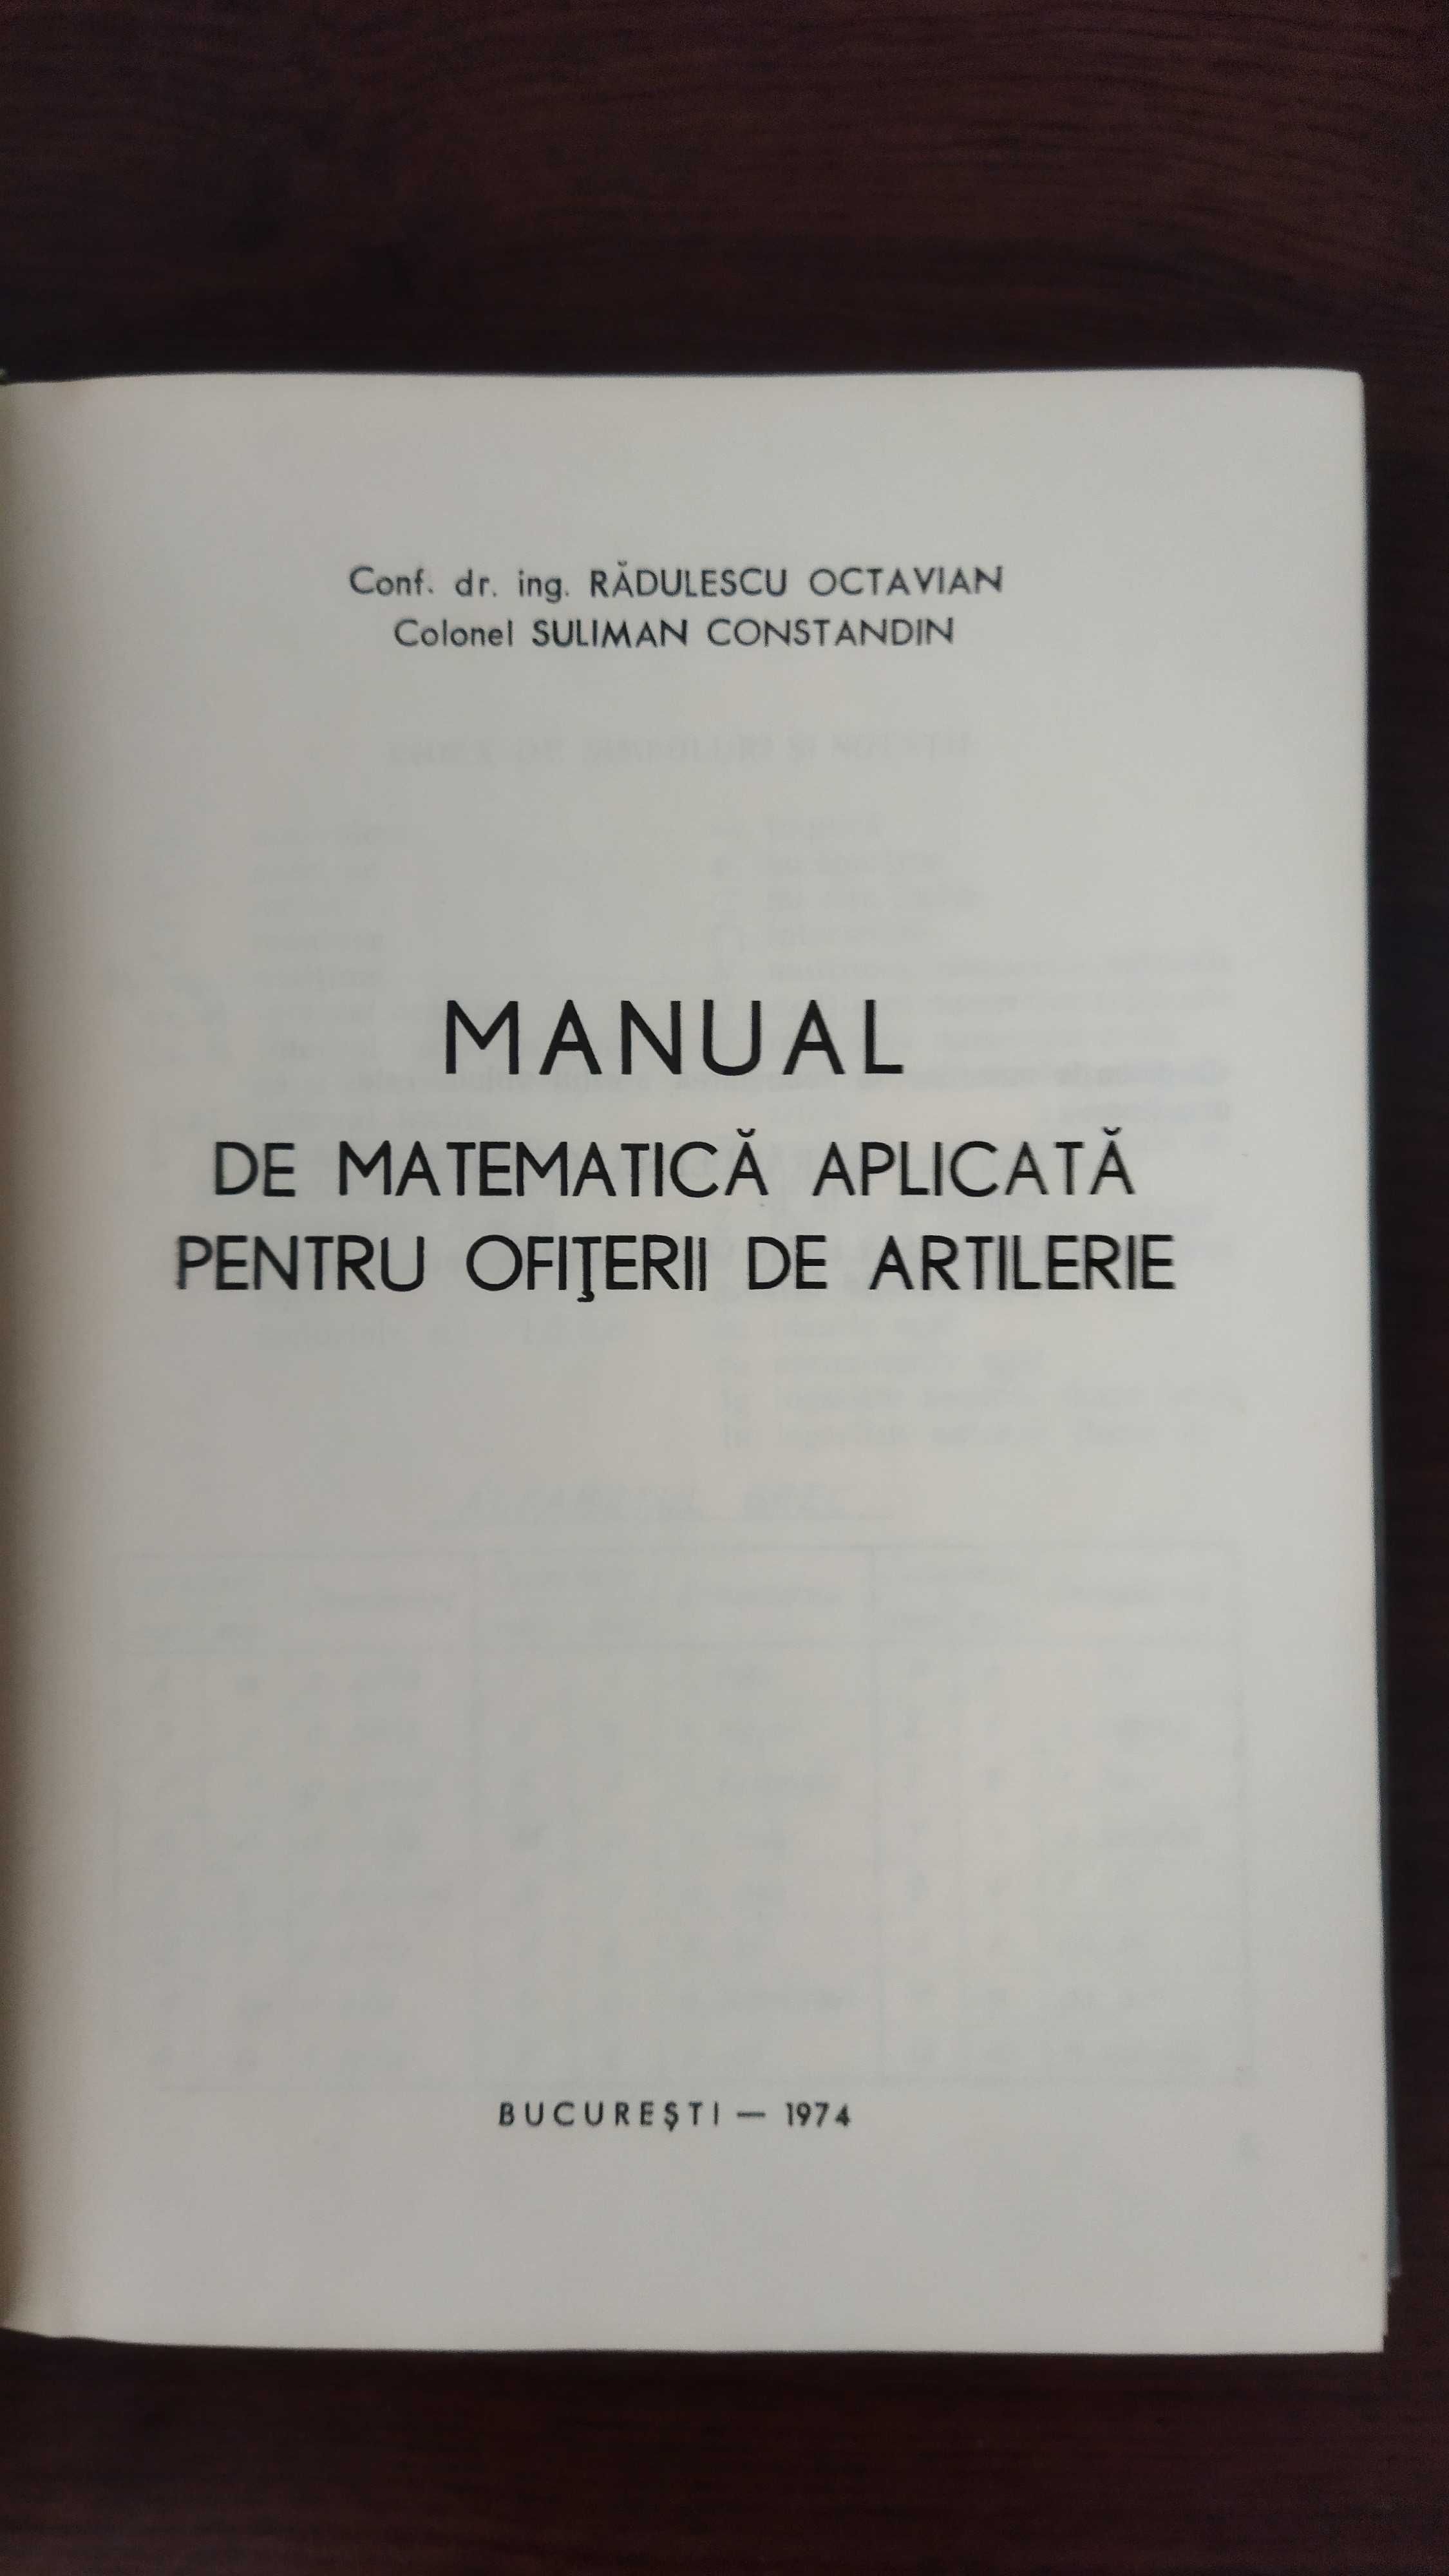 Carti militare, manuale pentru ofiteri 1974-1976